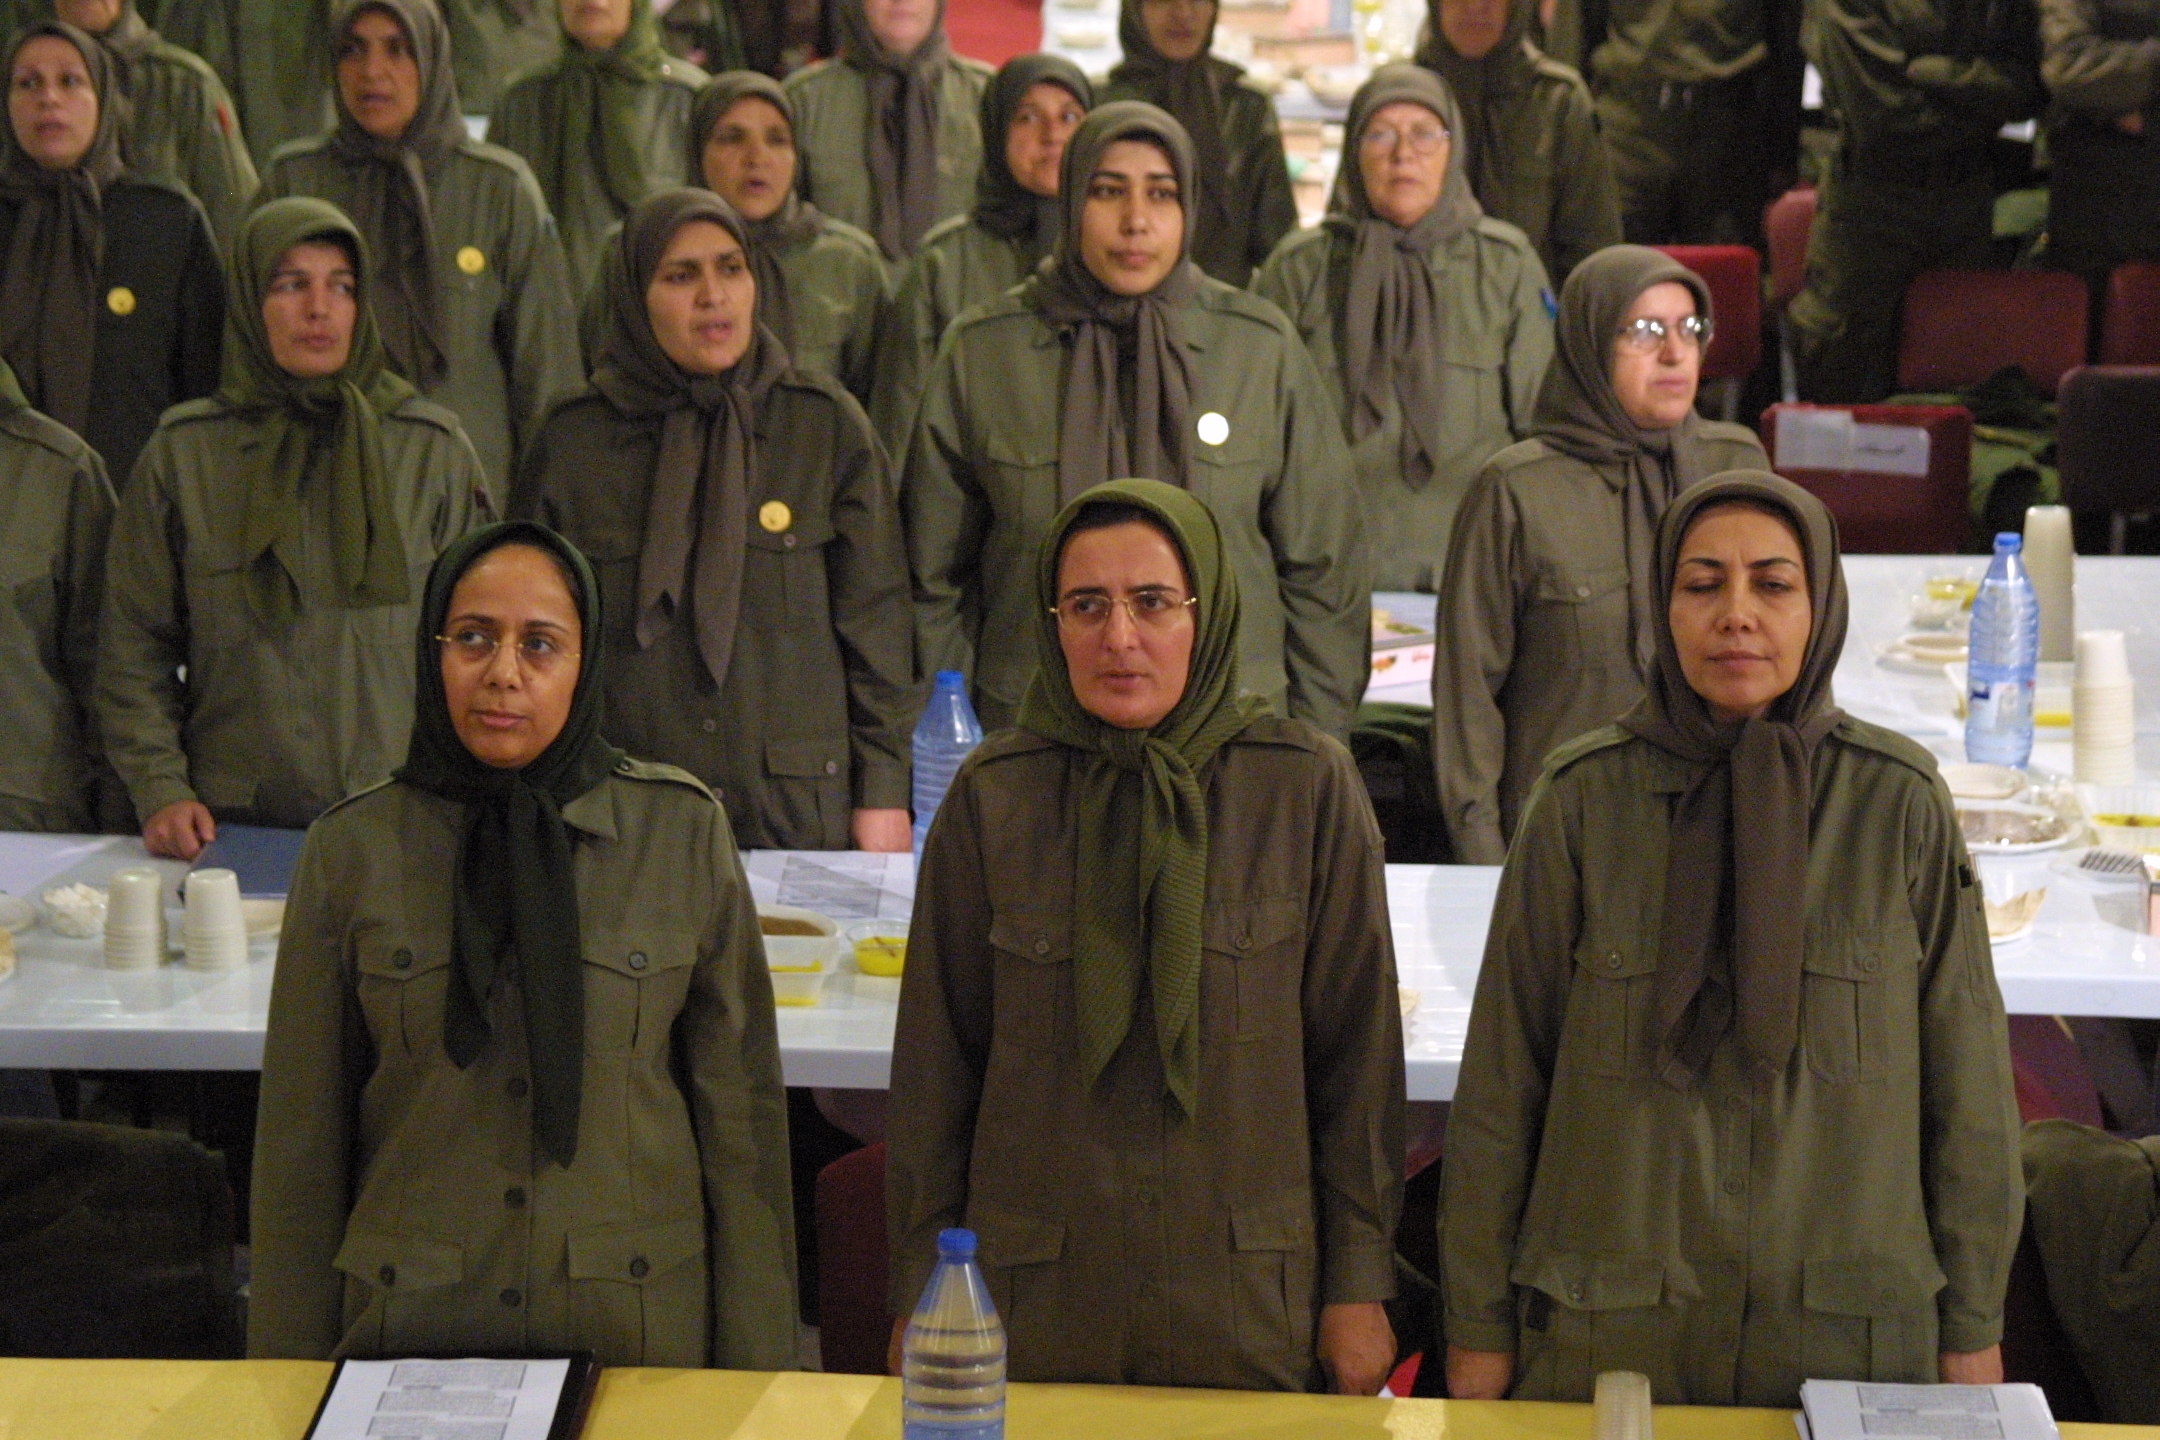 فیلمی از اظهارات زنان فرقه درباره رابطه غیراخلاقی با مسعود رجوی